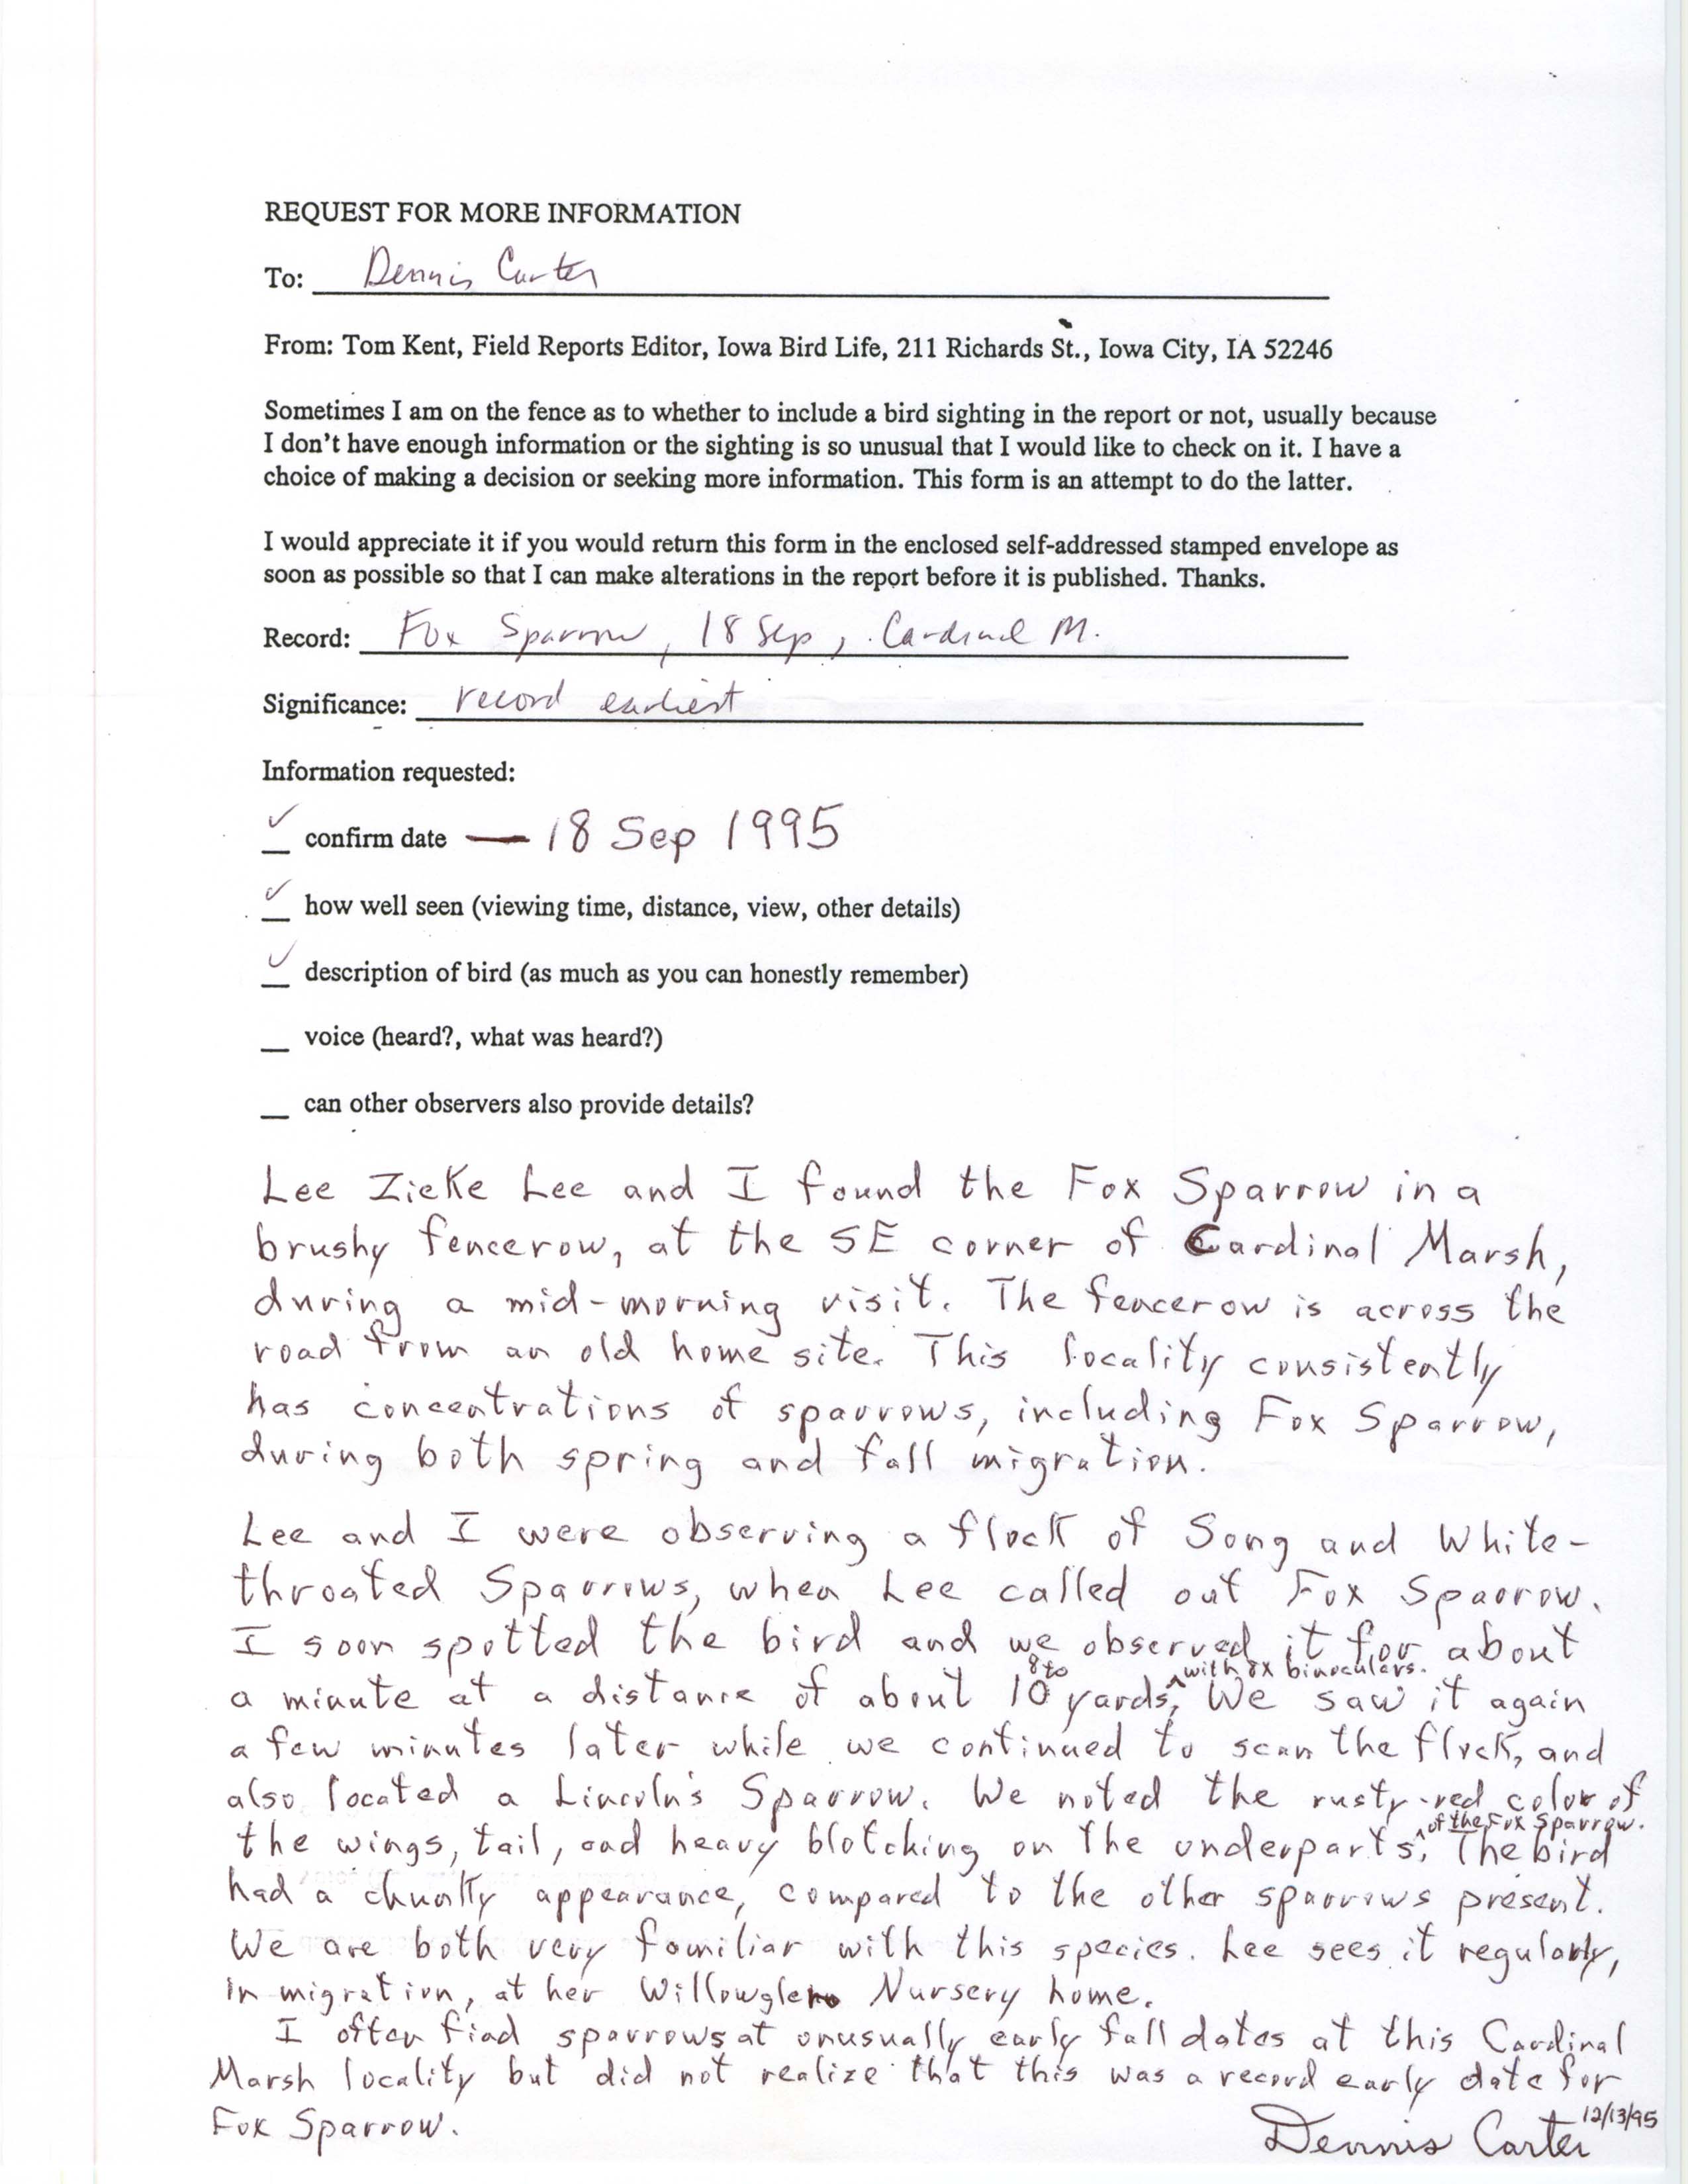 Rare bird documentation form for Fox Sparrow at Cardinal Marsh, 1995